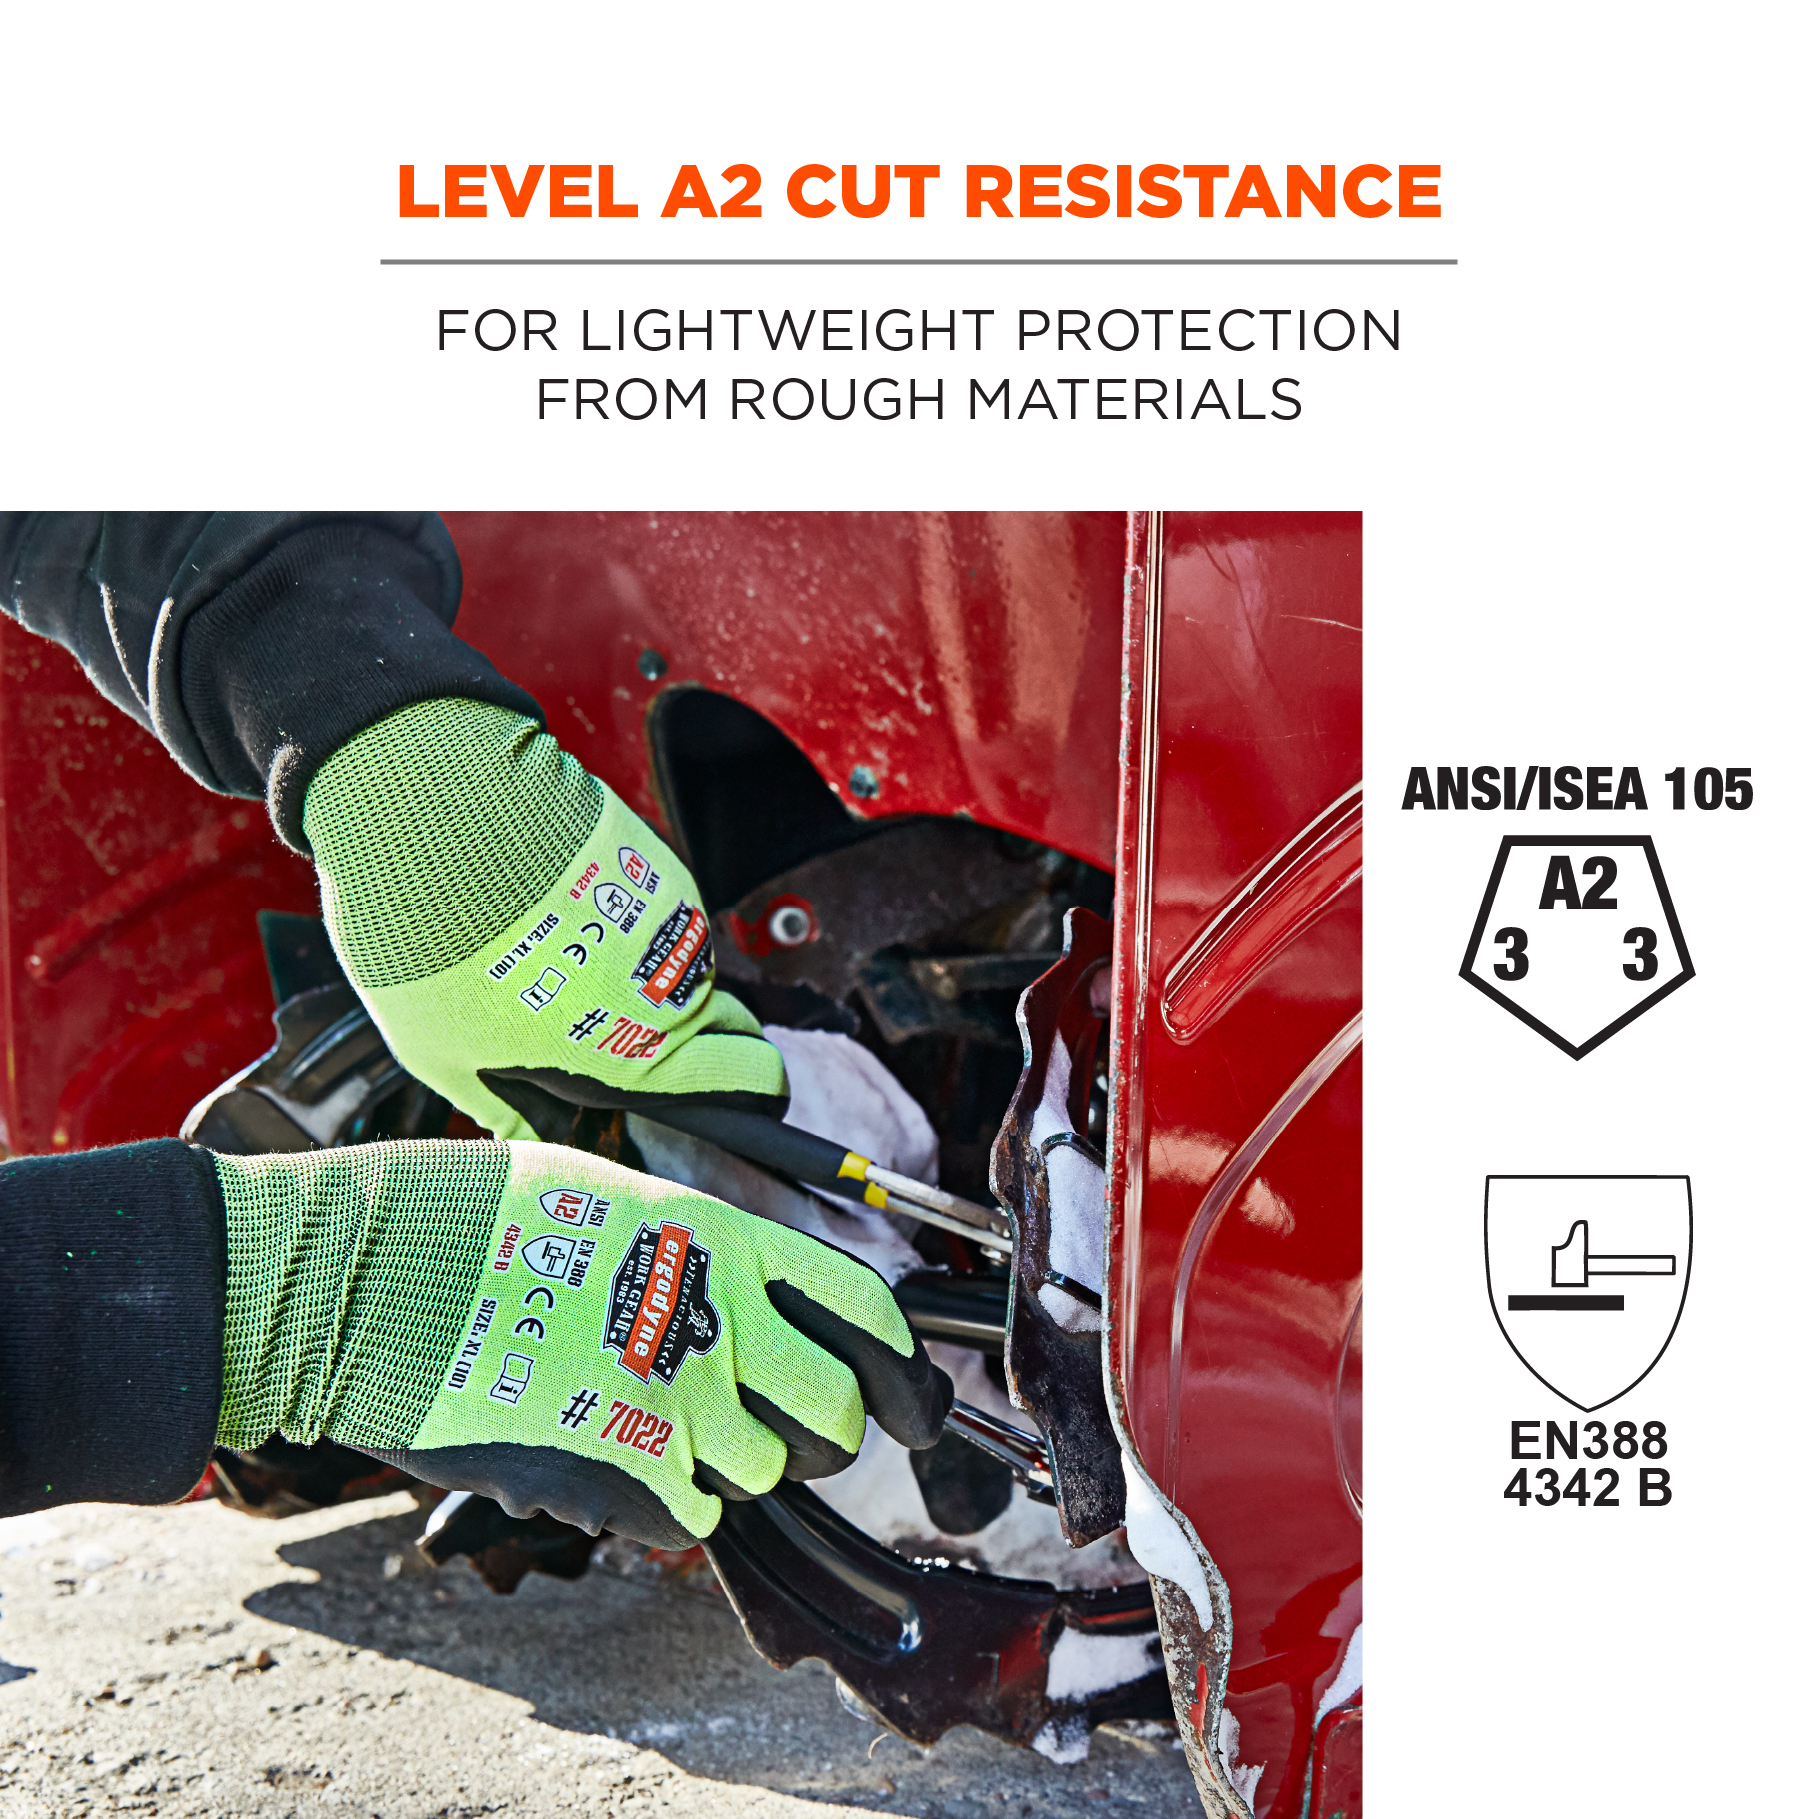 https://www.ergodyne.com/sites/default/files/product-images/17972-7022-hi-vis-nitrile-coated-cut-resistant-gloves-lime-level-a2-cut-resistance_0.jpg